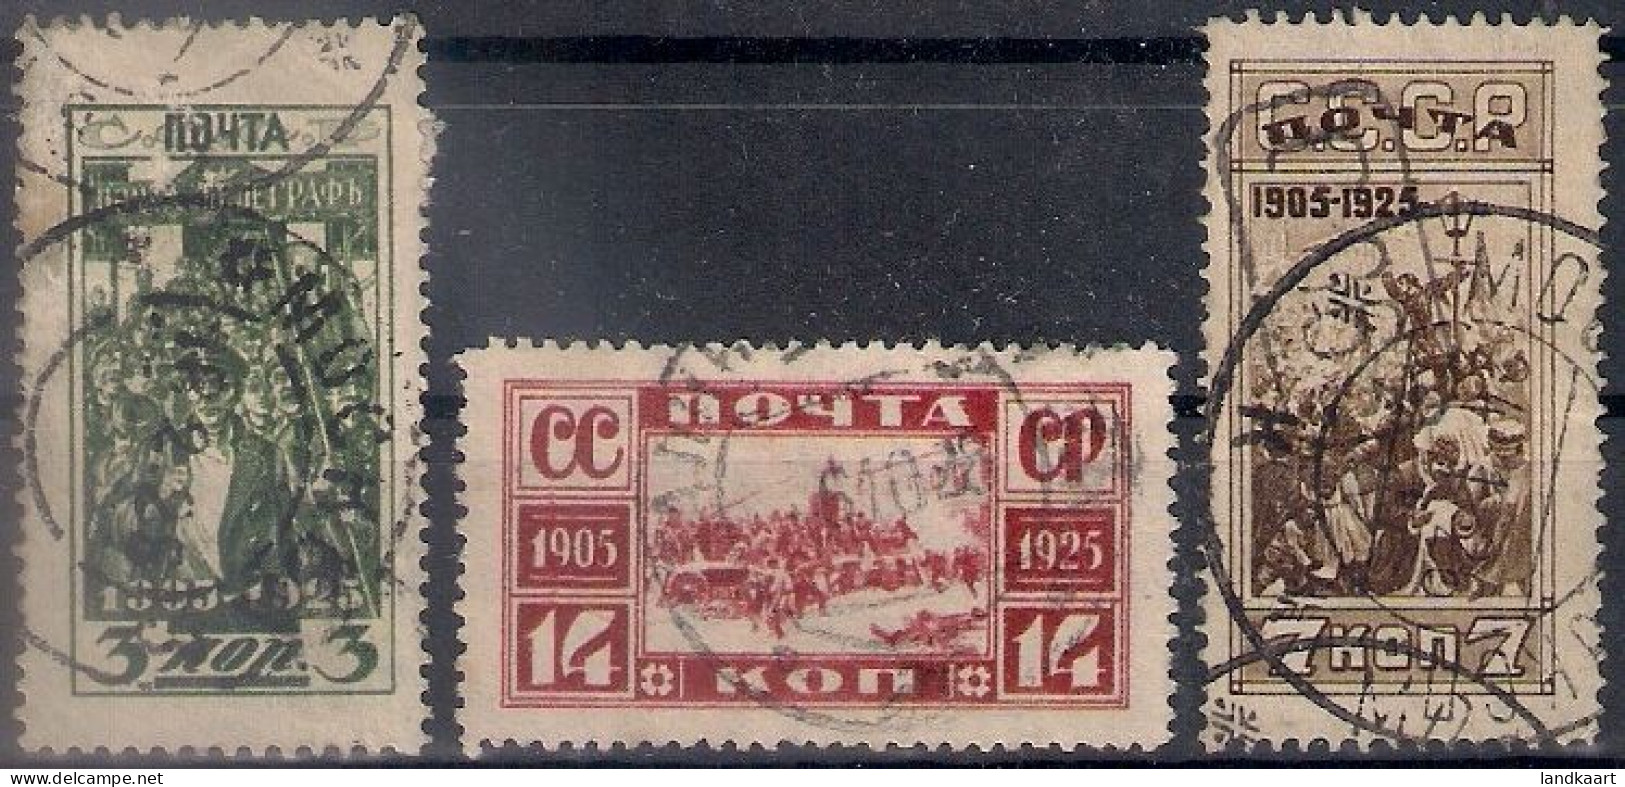 Russia 1925, Michel Nr 302-04, Used - Usati